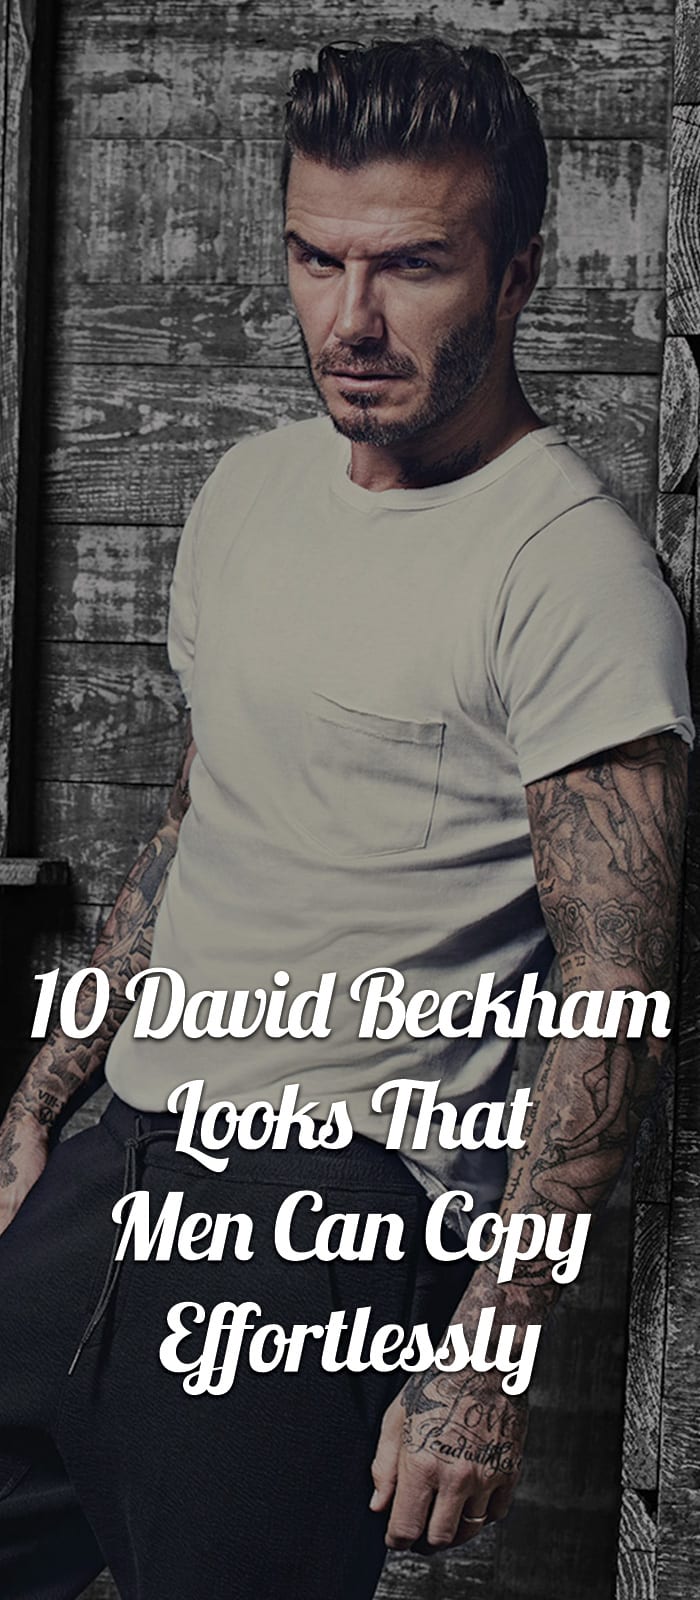 10-David-Beckham-Looks-That-Men-Can-Copy-Effortlessly